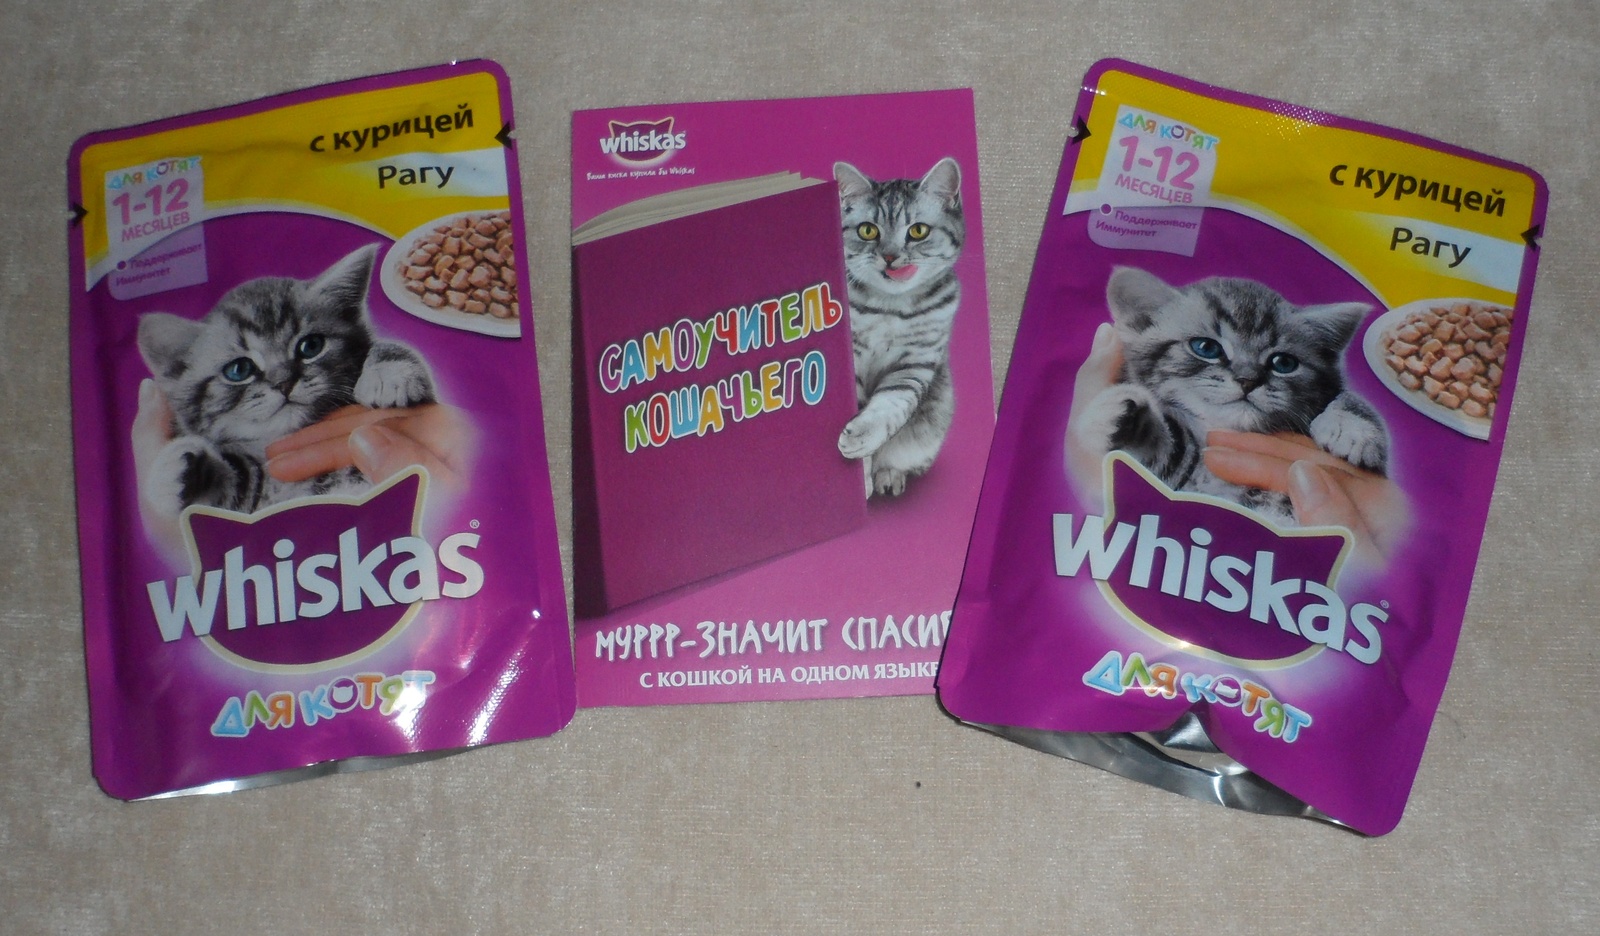 Купить пакетик корма для кошки. Пакетик корма для кошек. Корм для котят в пакетиках. Дешевый кошачий корм в пакетиках. Еда для котят в пакетиках.